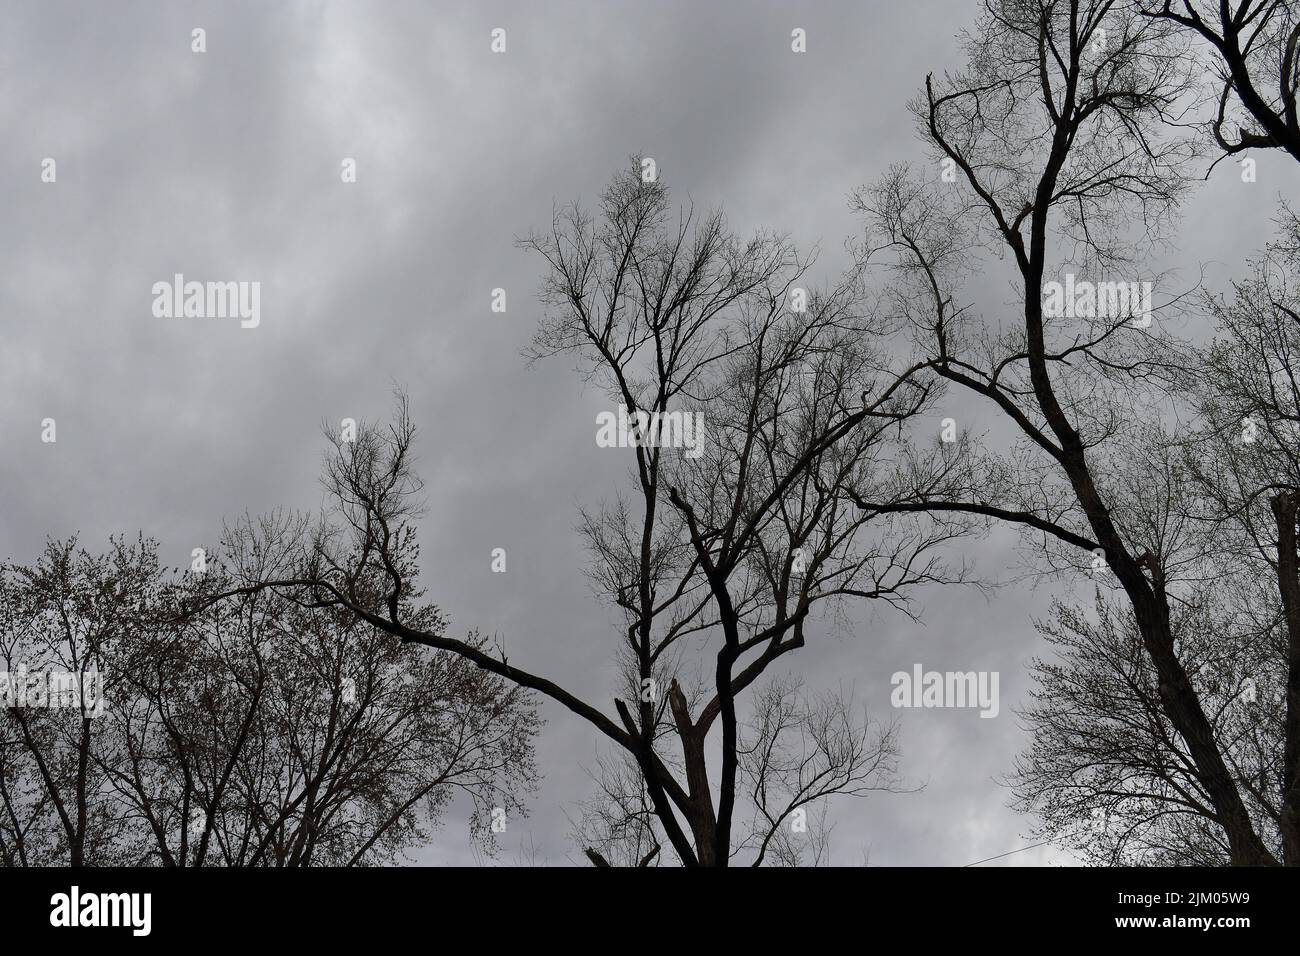 Eine Aufnahme des wolkigen dunklen Himmels und der trockenen Bäume am Tag Stockfoto